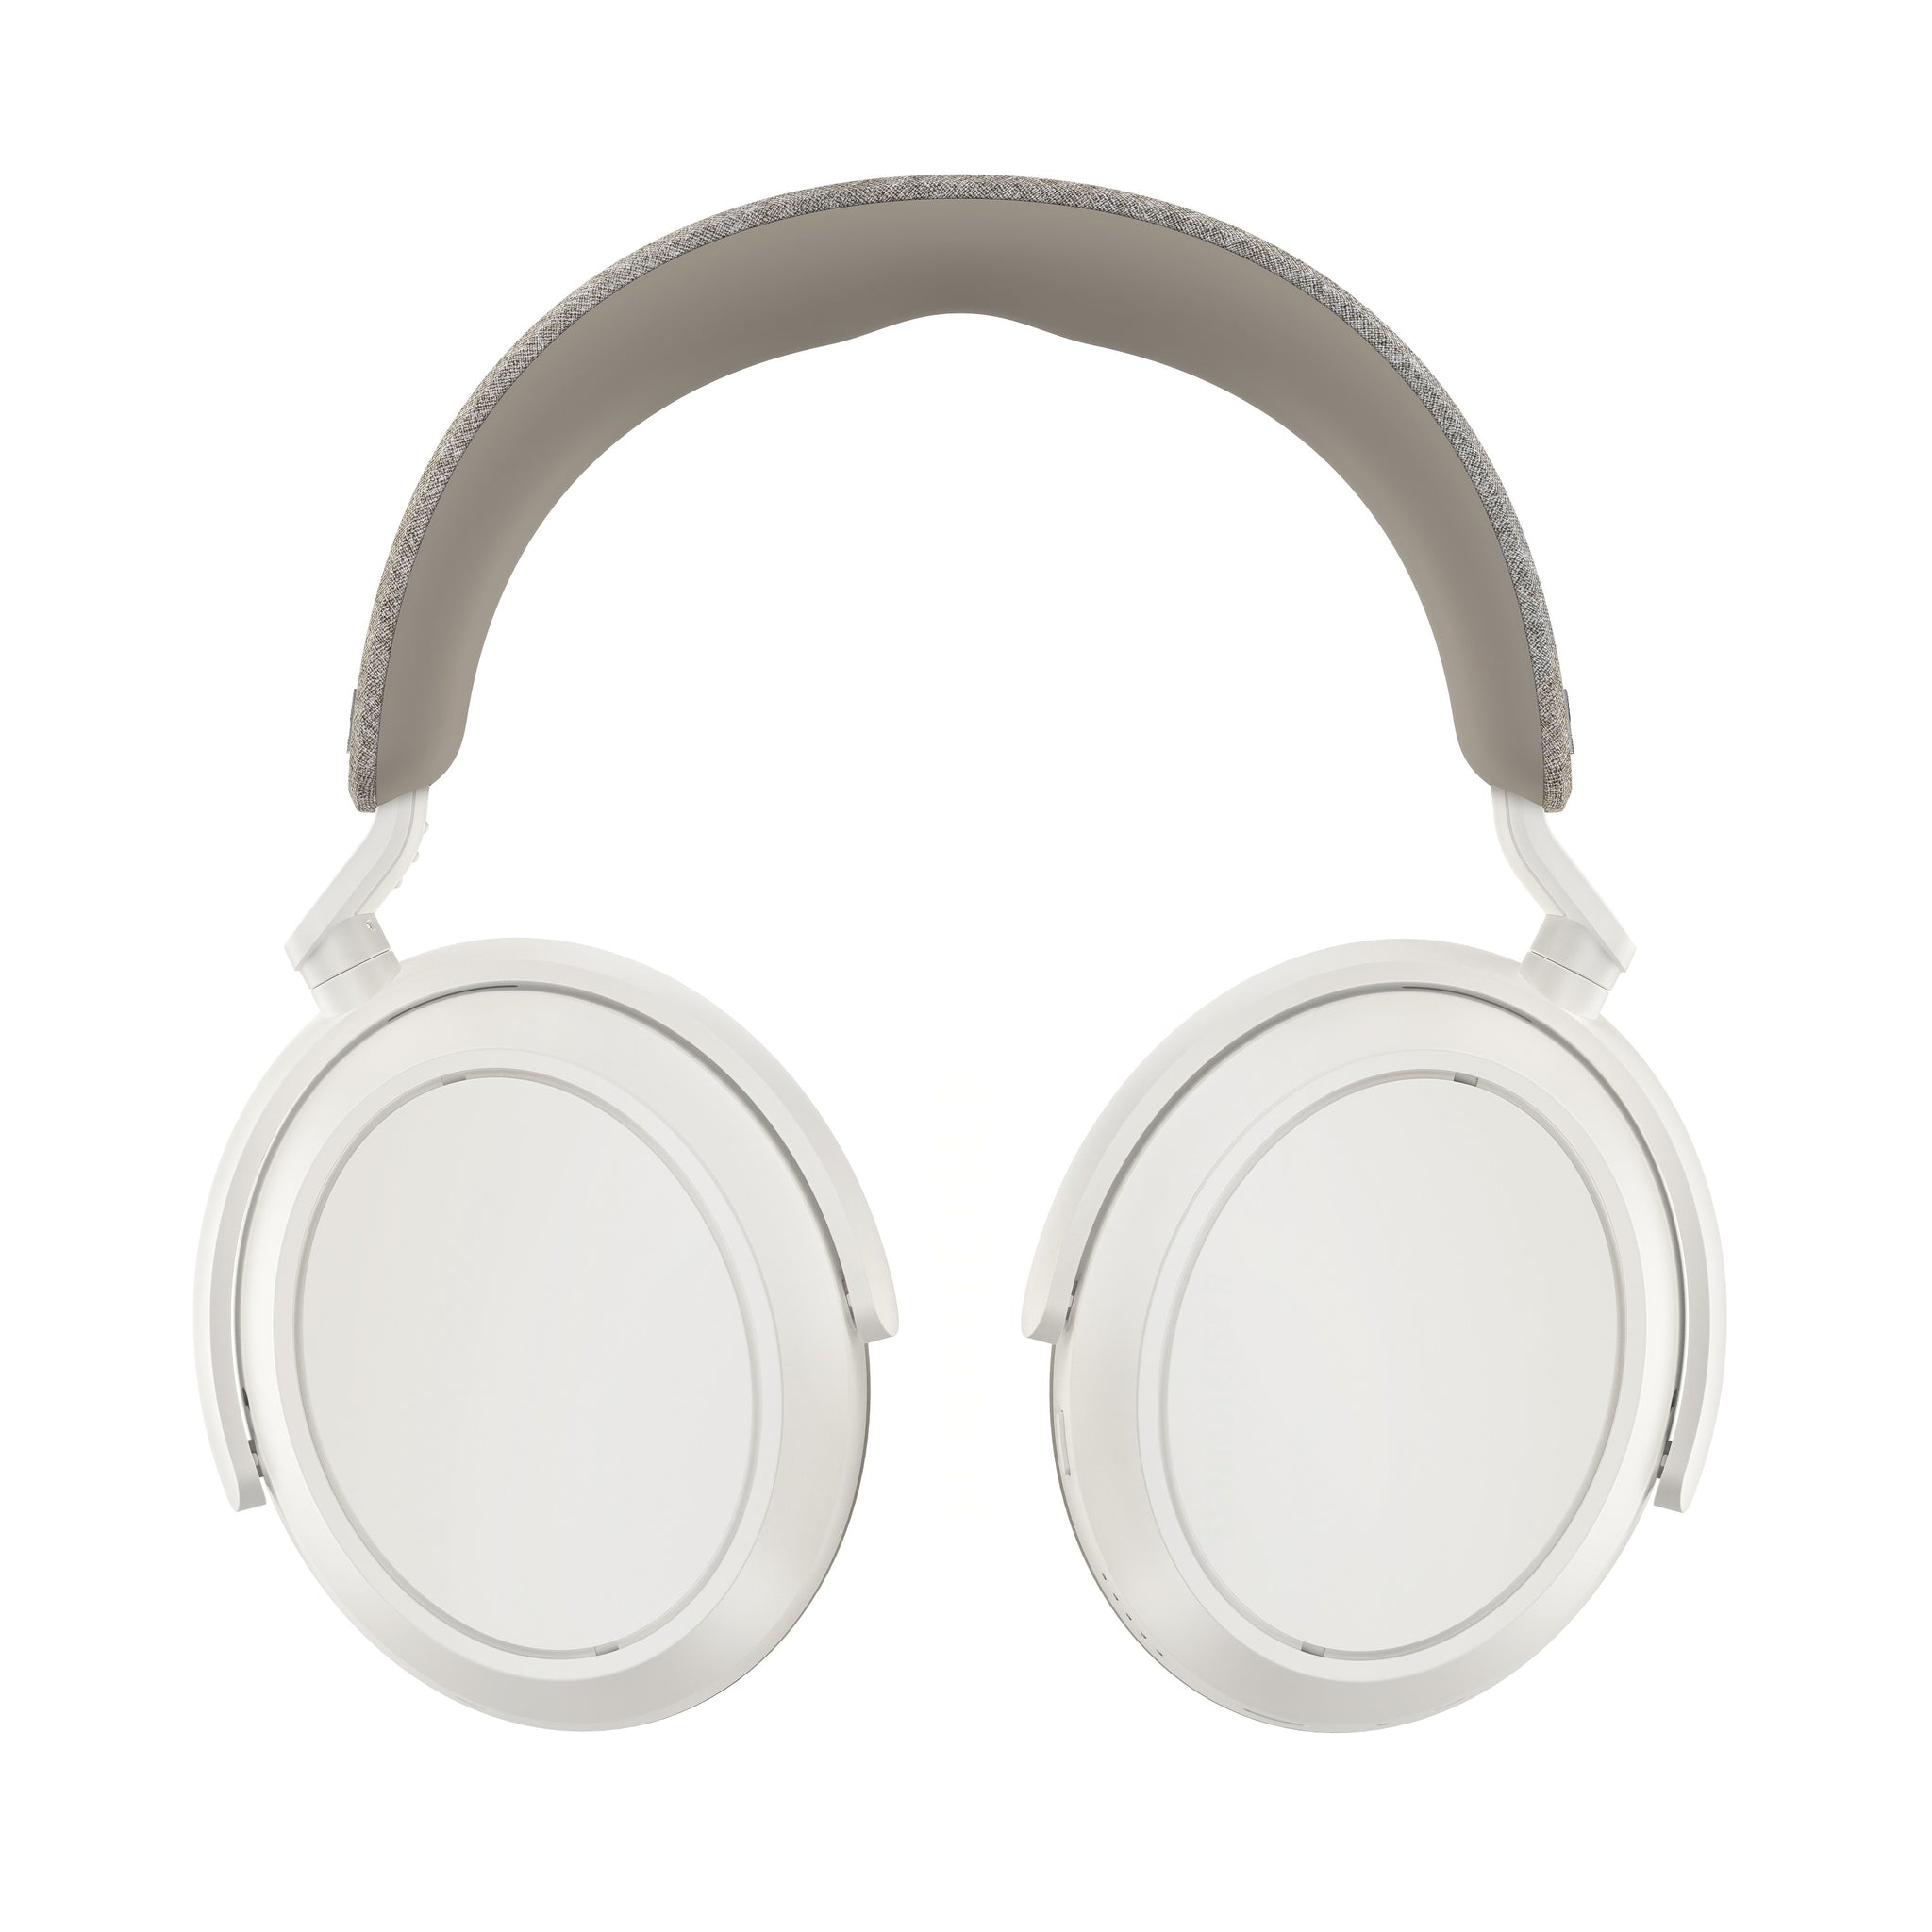 MOMENTUM 4 Wireless | In-Ear, Noise-Canceling, Wireless, Bluetooth 